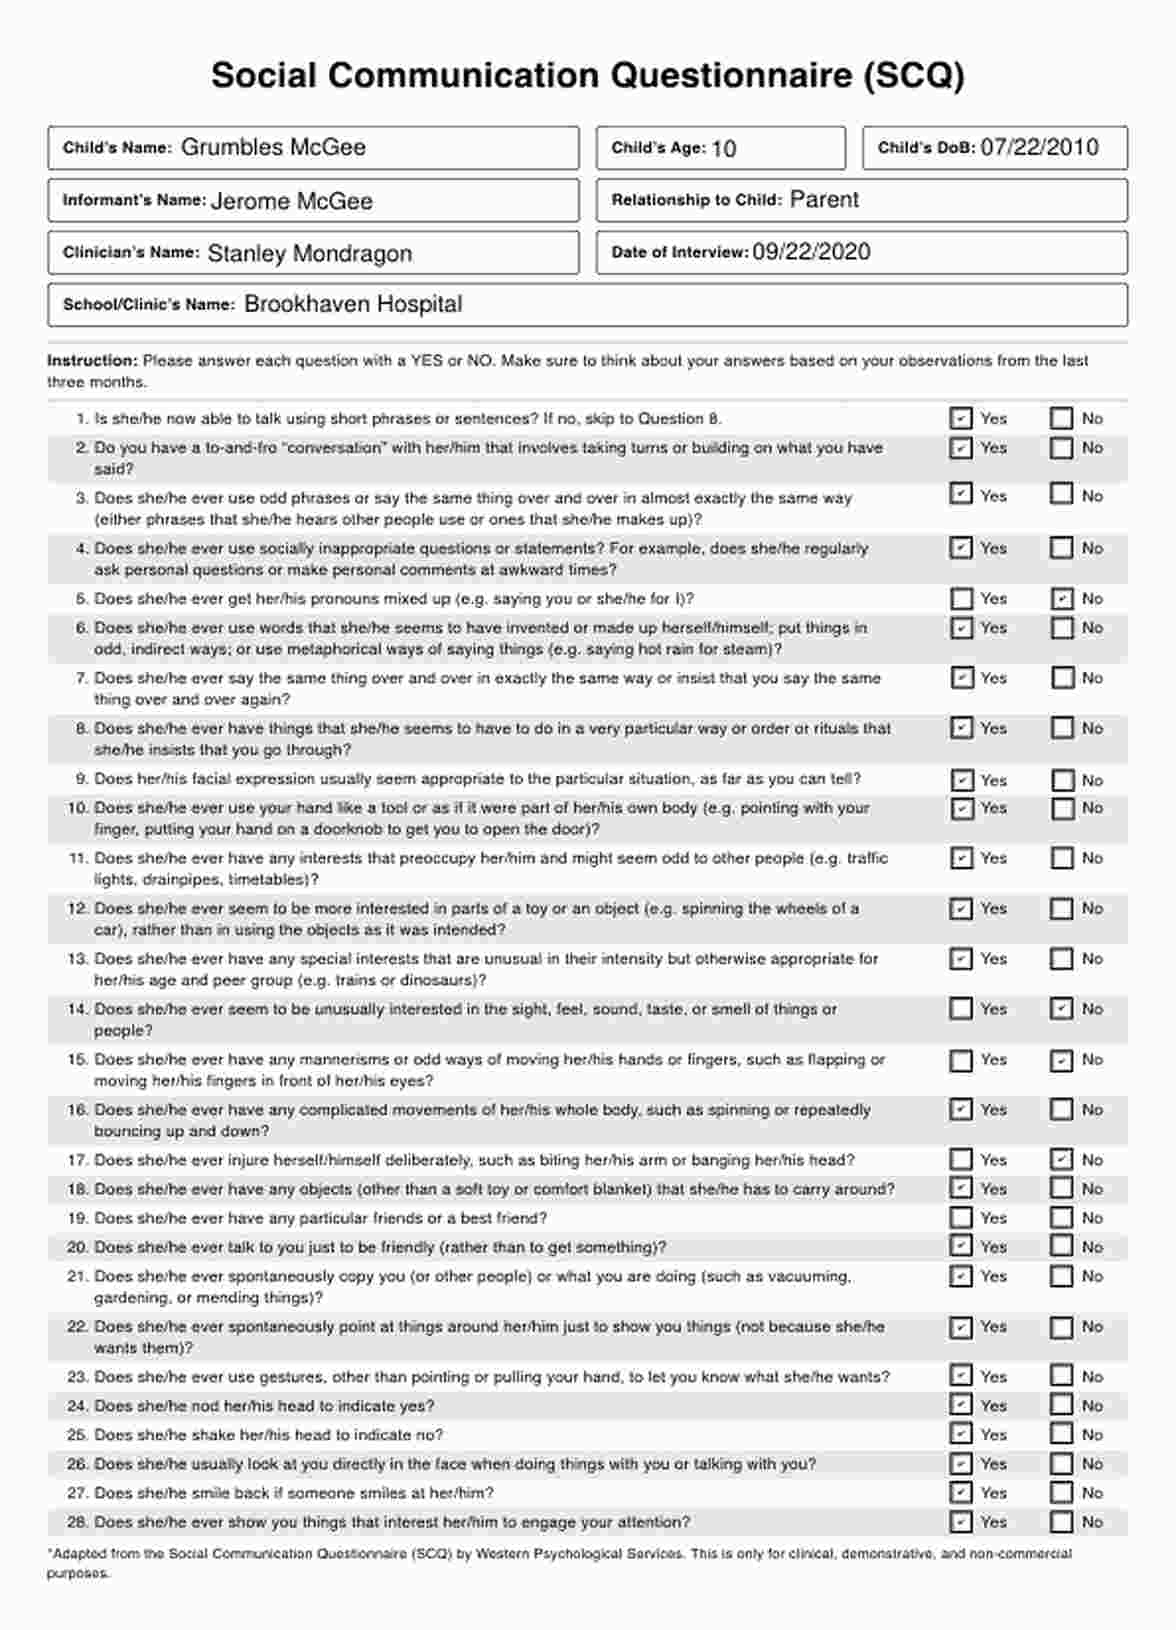 Cuestionario para evaluar habilidades sociales y de comunicación de un paciente (SCQ) PDF Example